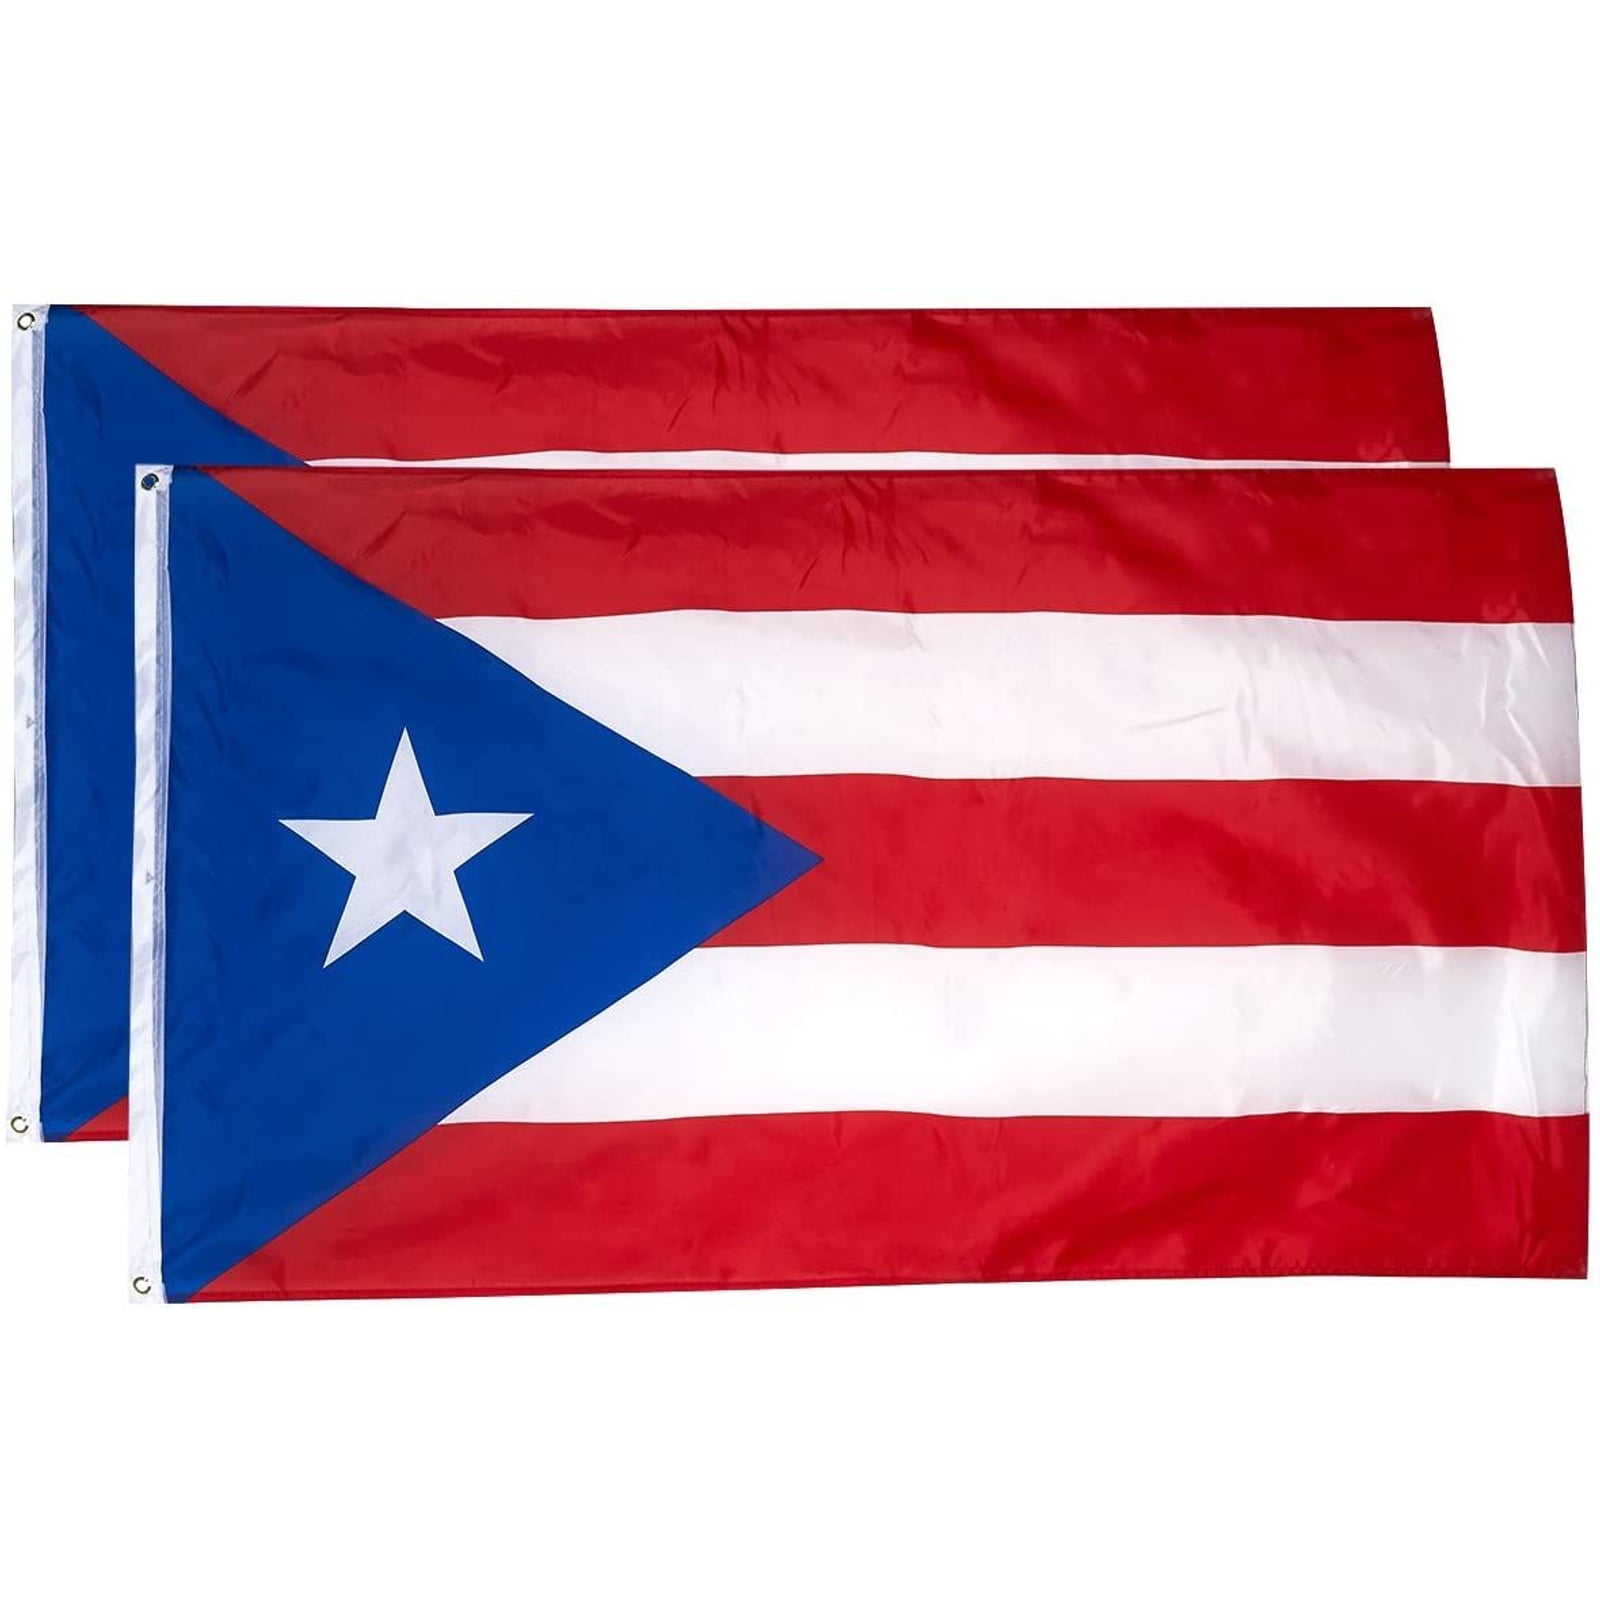 Puerto Rico Flag Umbrella Automatic Open Stick New Condition